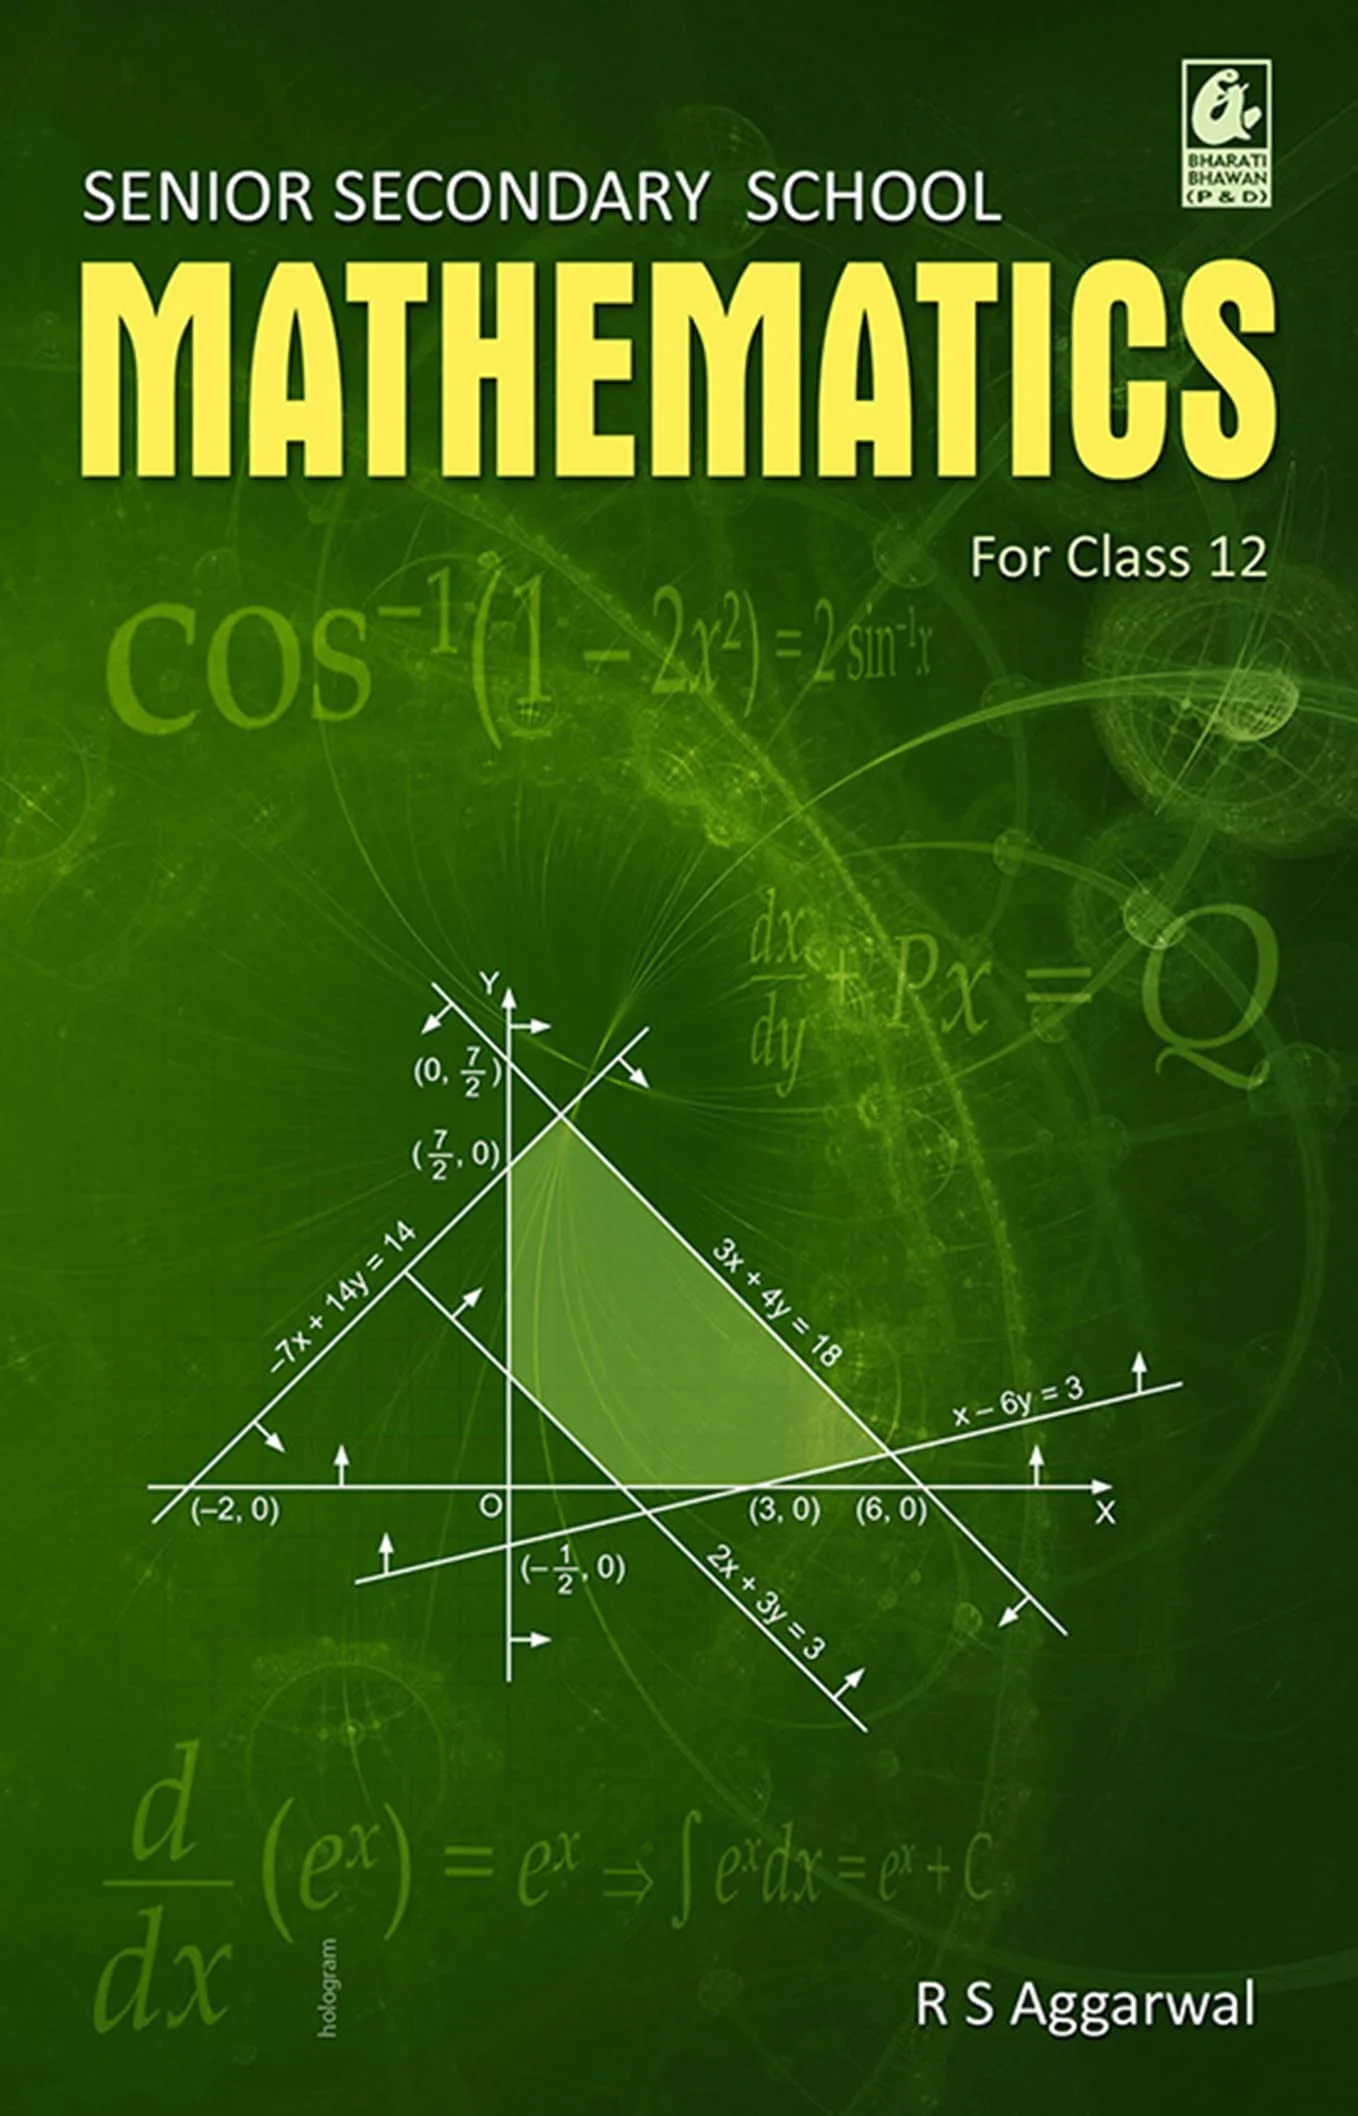 Class 12 Mathematics Book